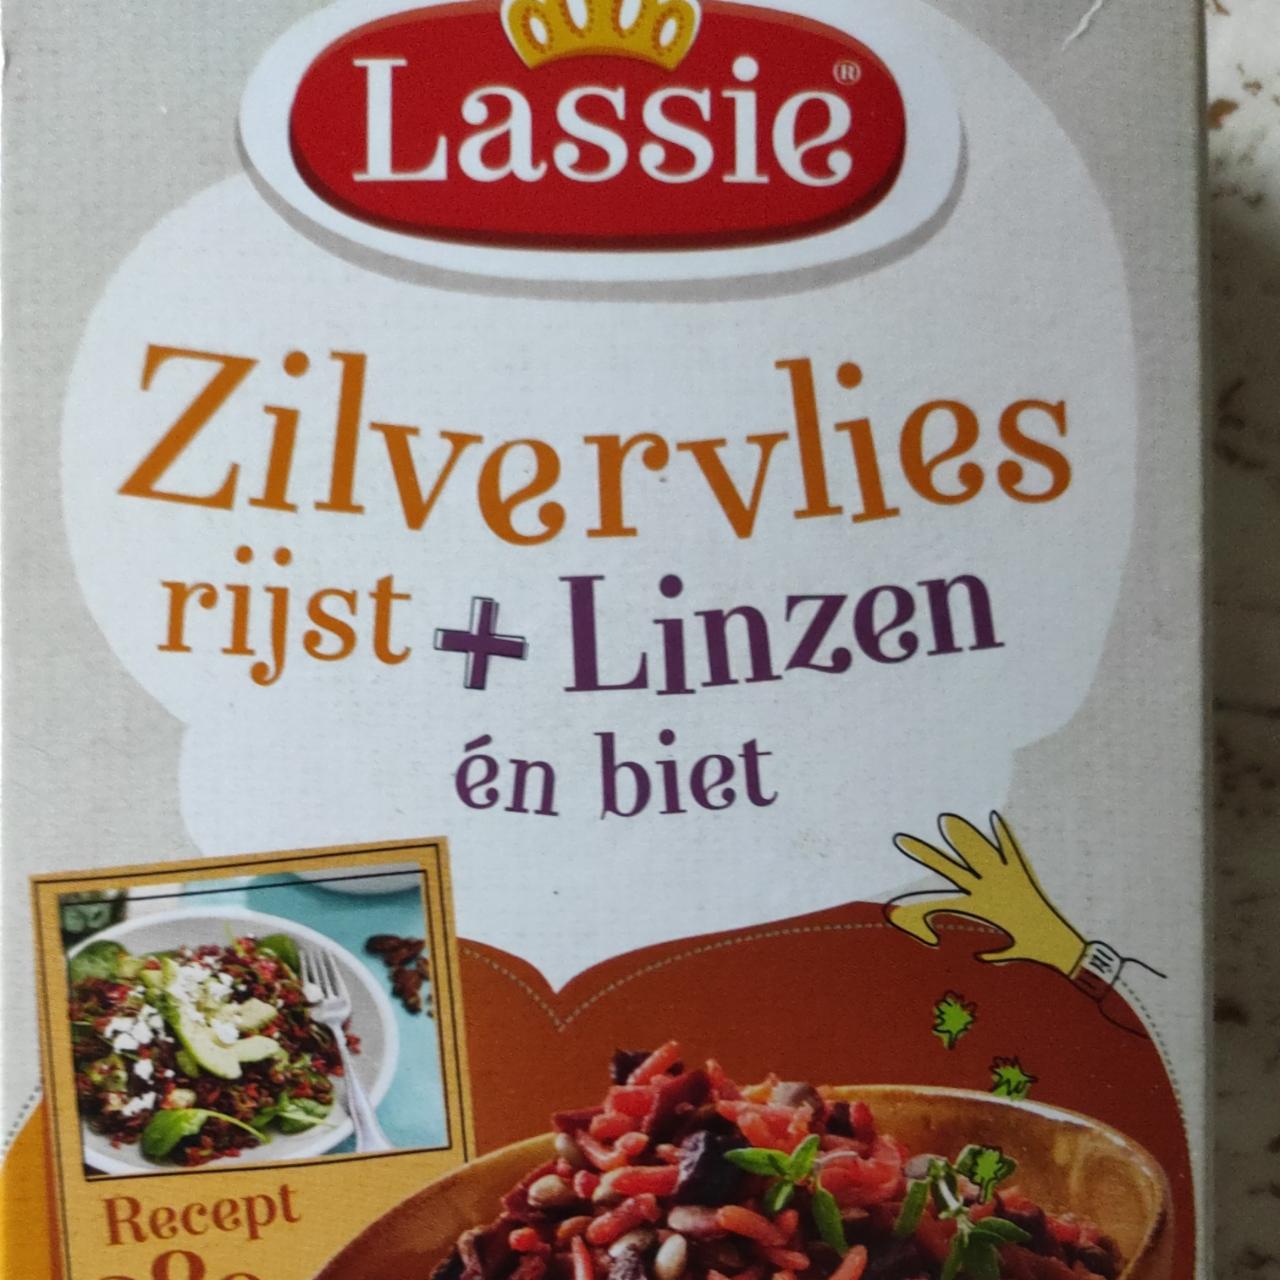 Fotografie - Zilvervlies rijst + Linzen én biet Lassie